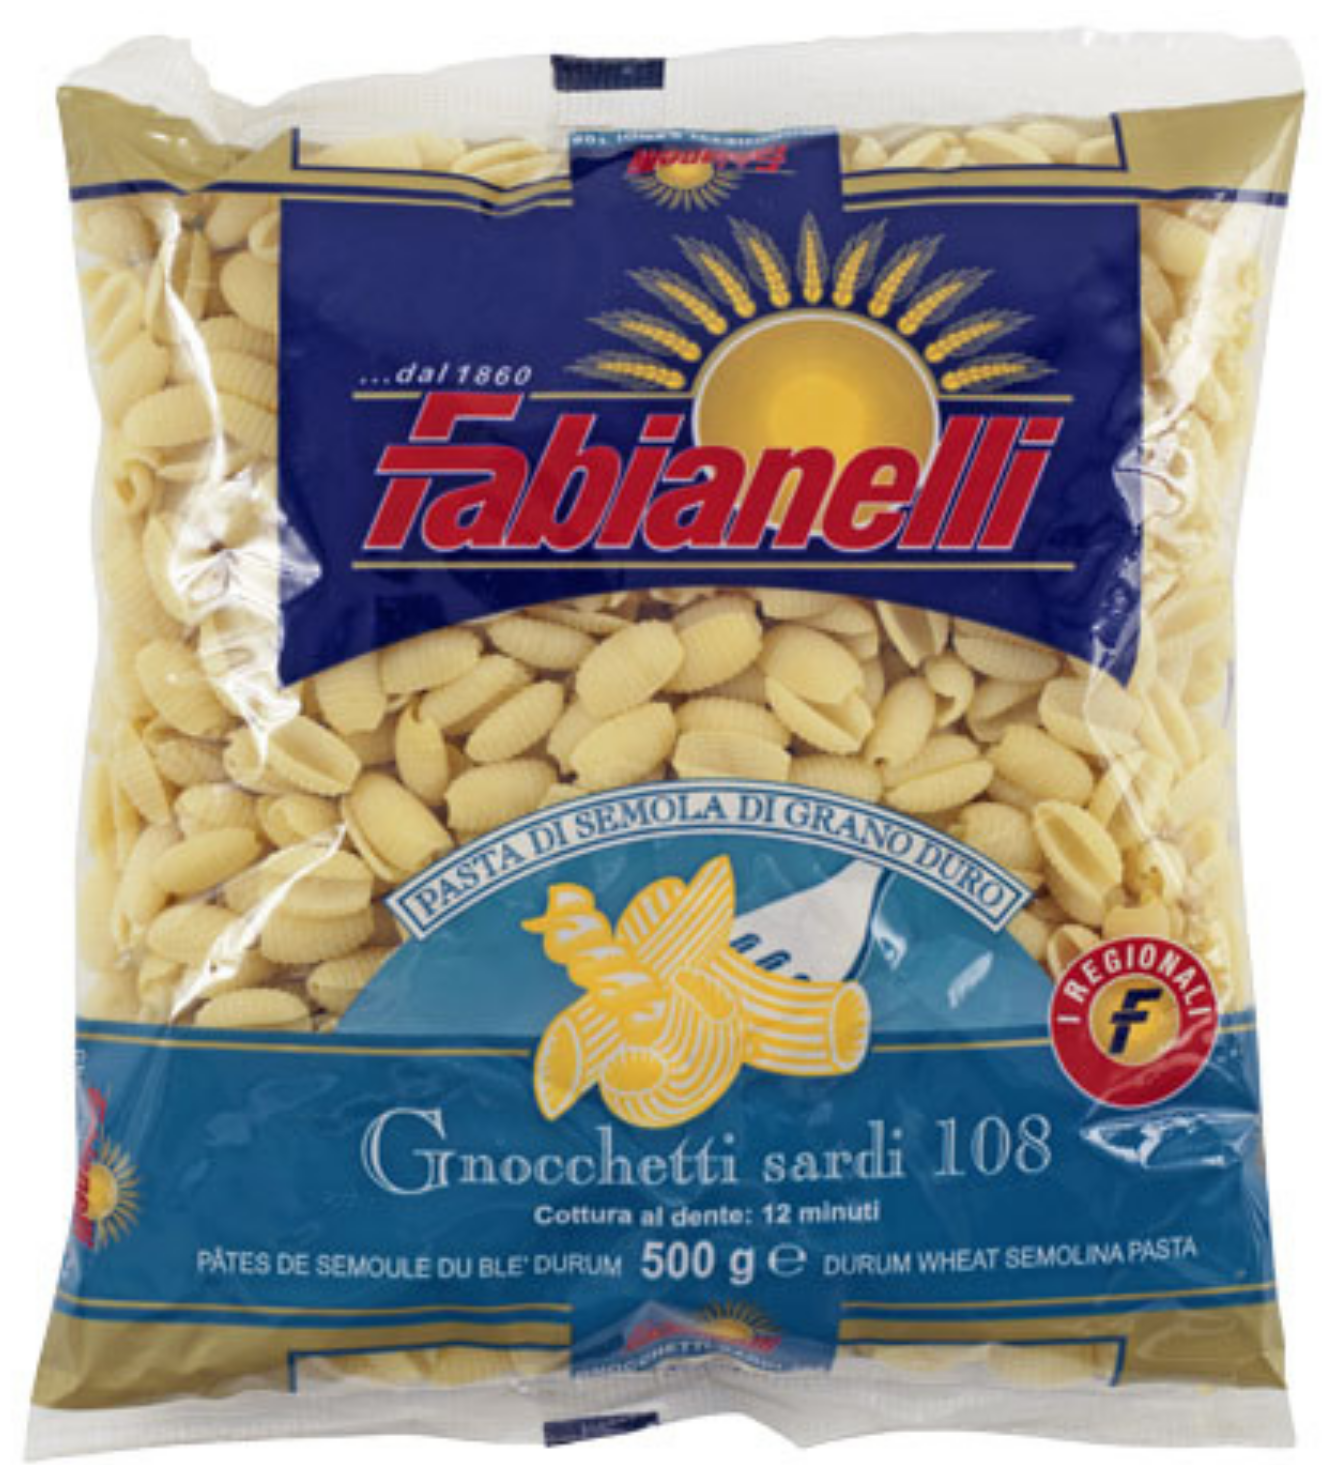 Паста Fabianelli Ньоккетти традиция Сардинии из твердых сортов пшеницы 500 гр